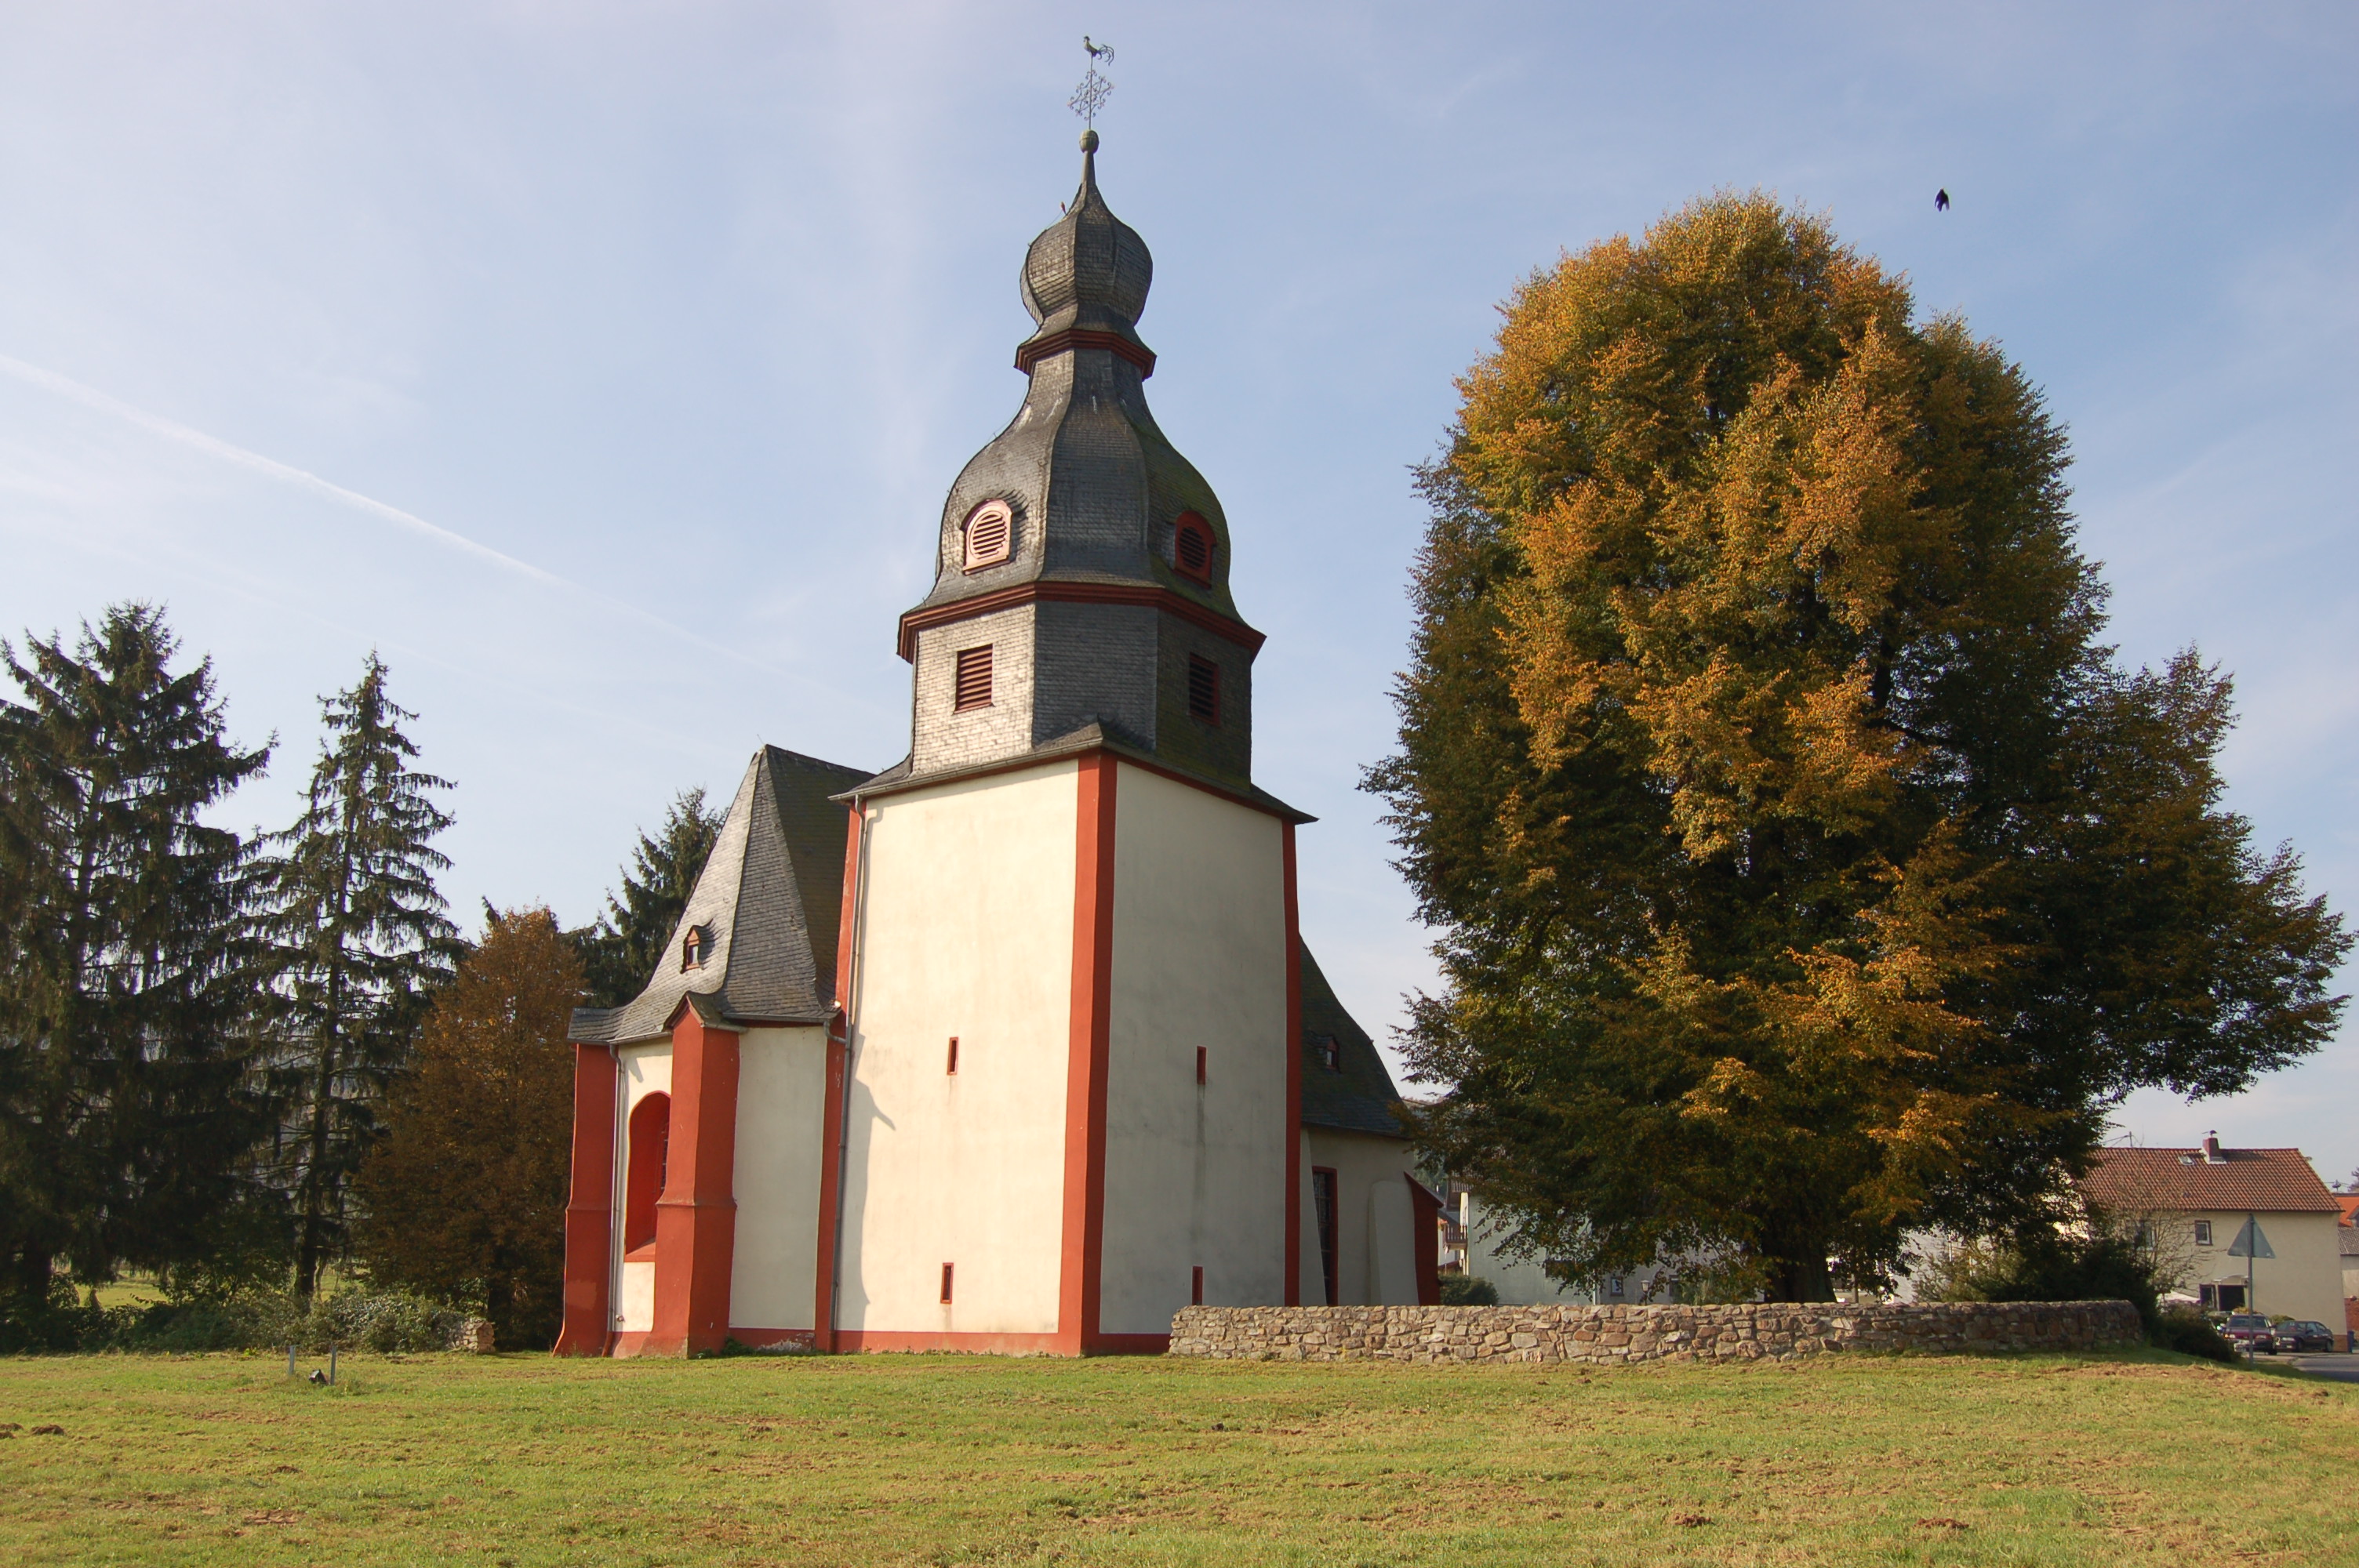 Bild 1 Johanneskirche - Evangelische Johanneskirchengemeinde Niederseelbach in Niedernhausen